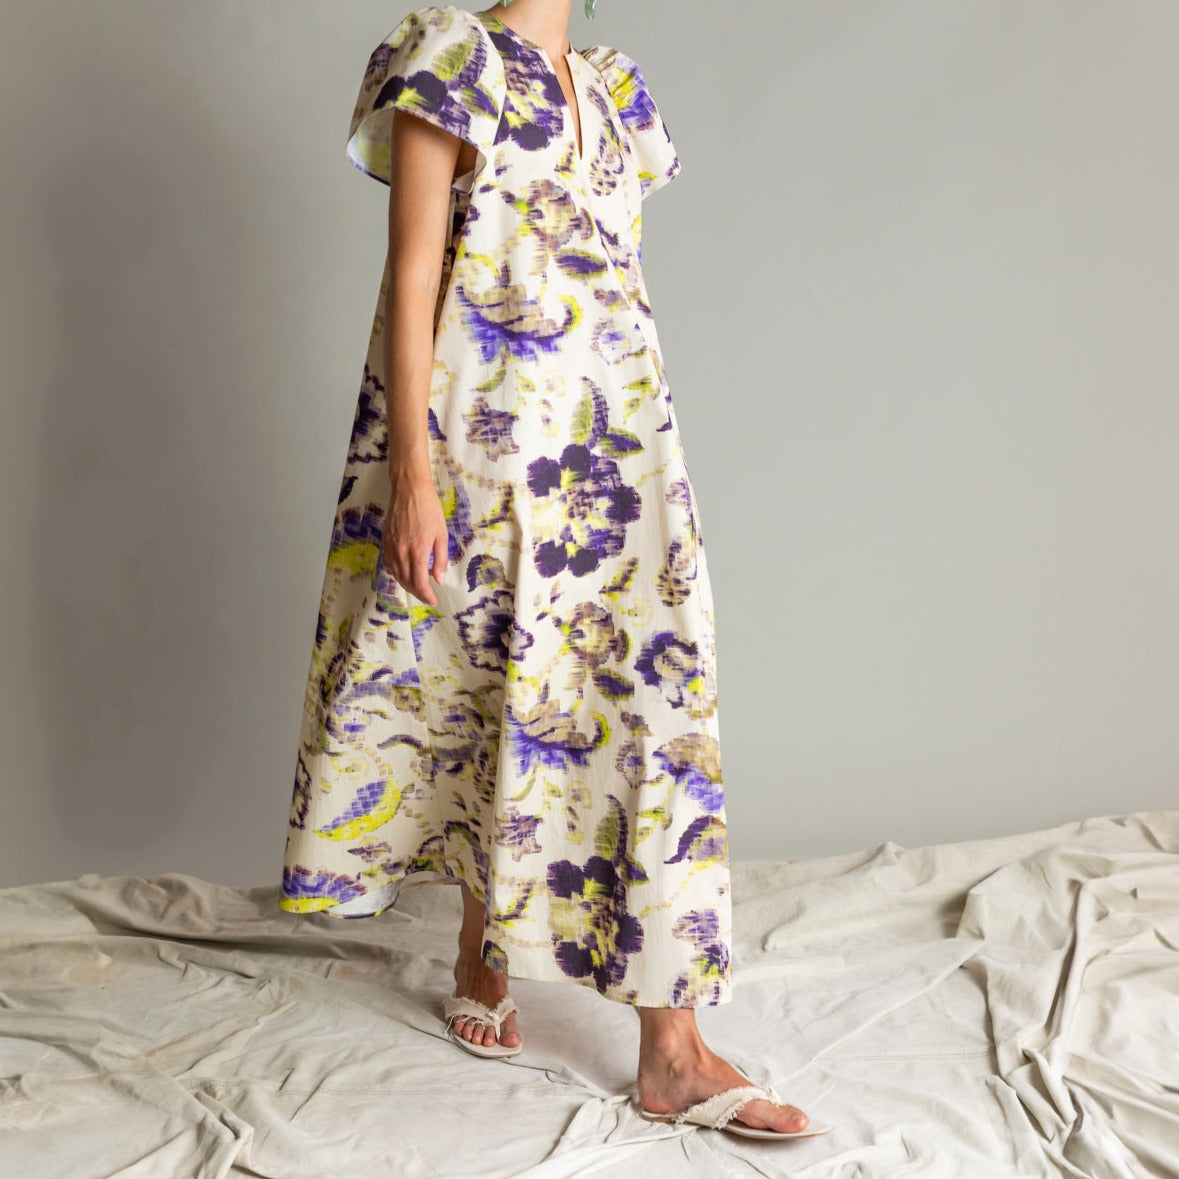 Ruffle Sleeve Printed Dress in Violet